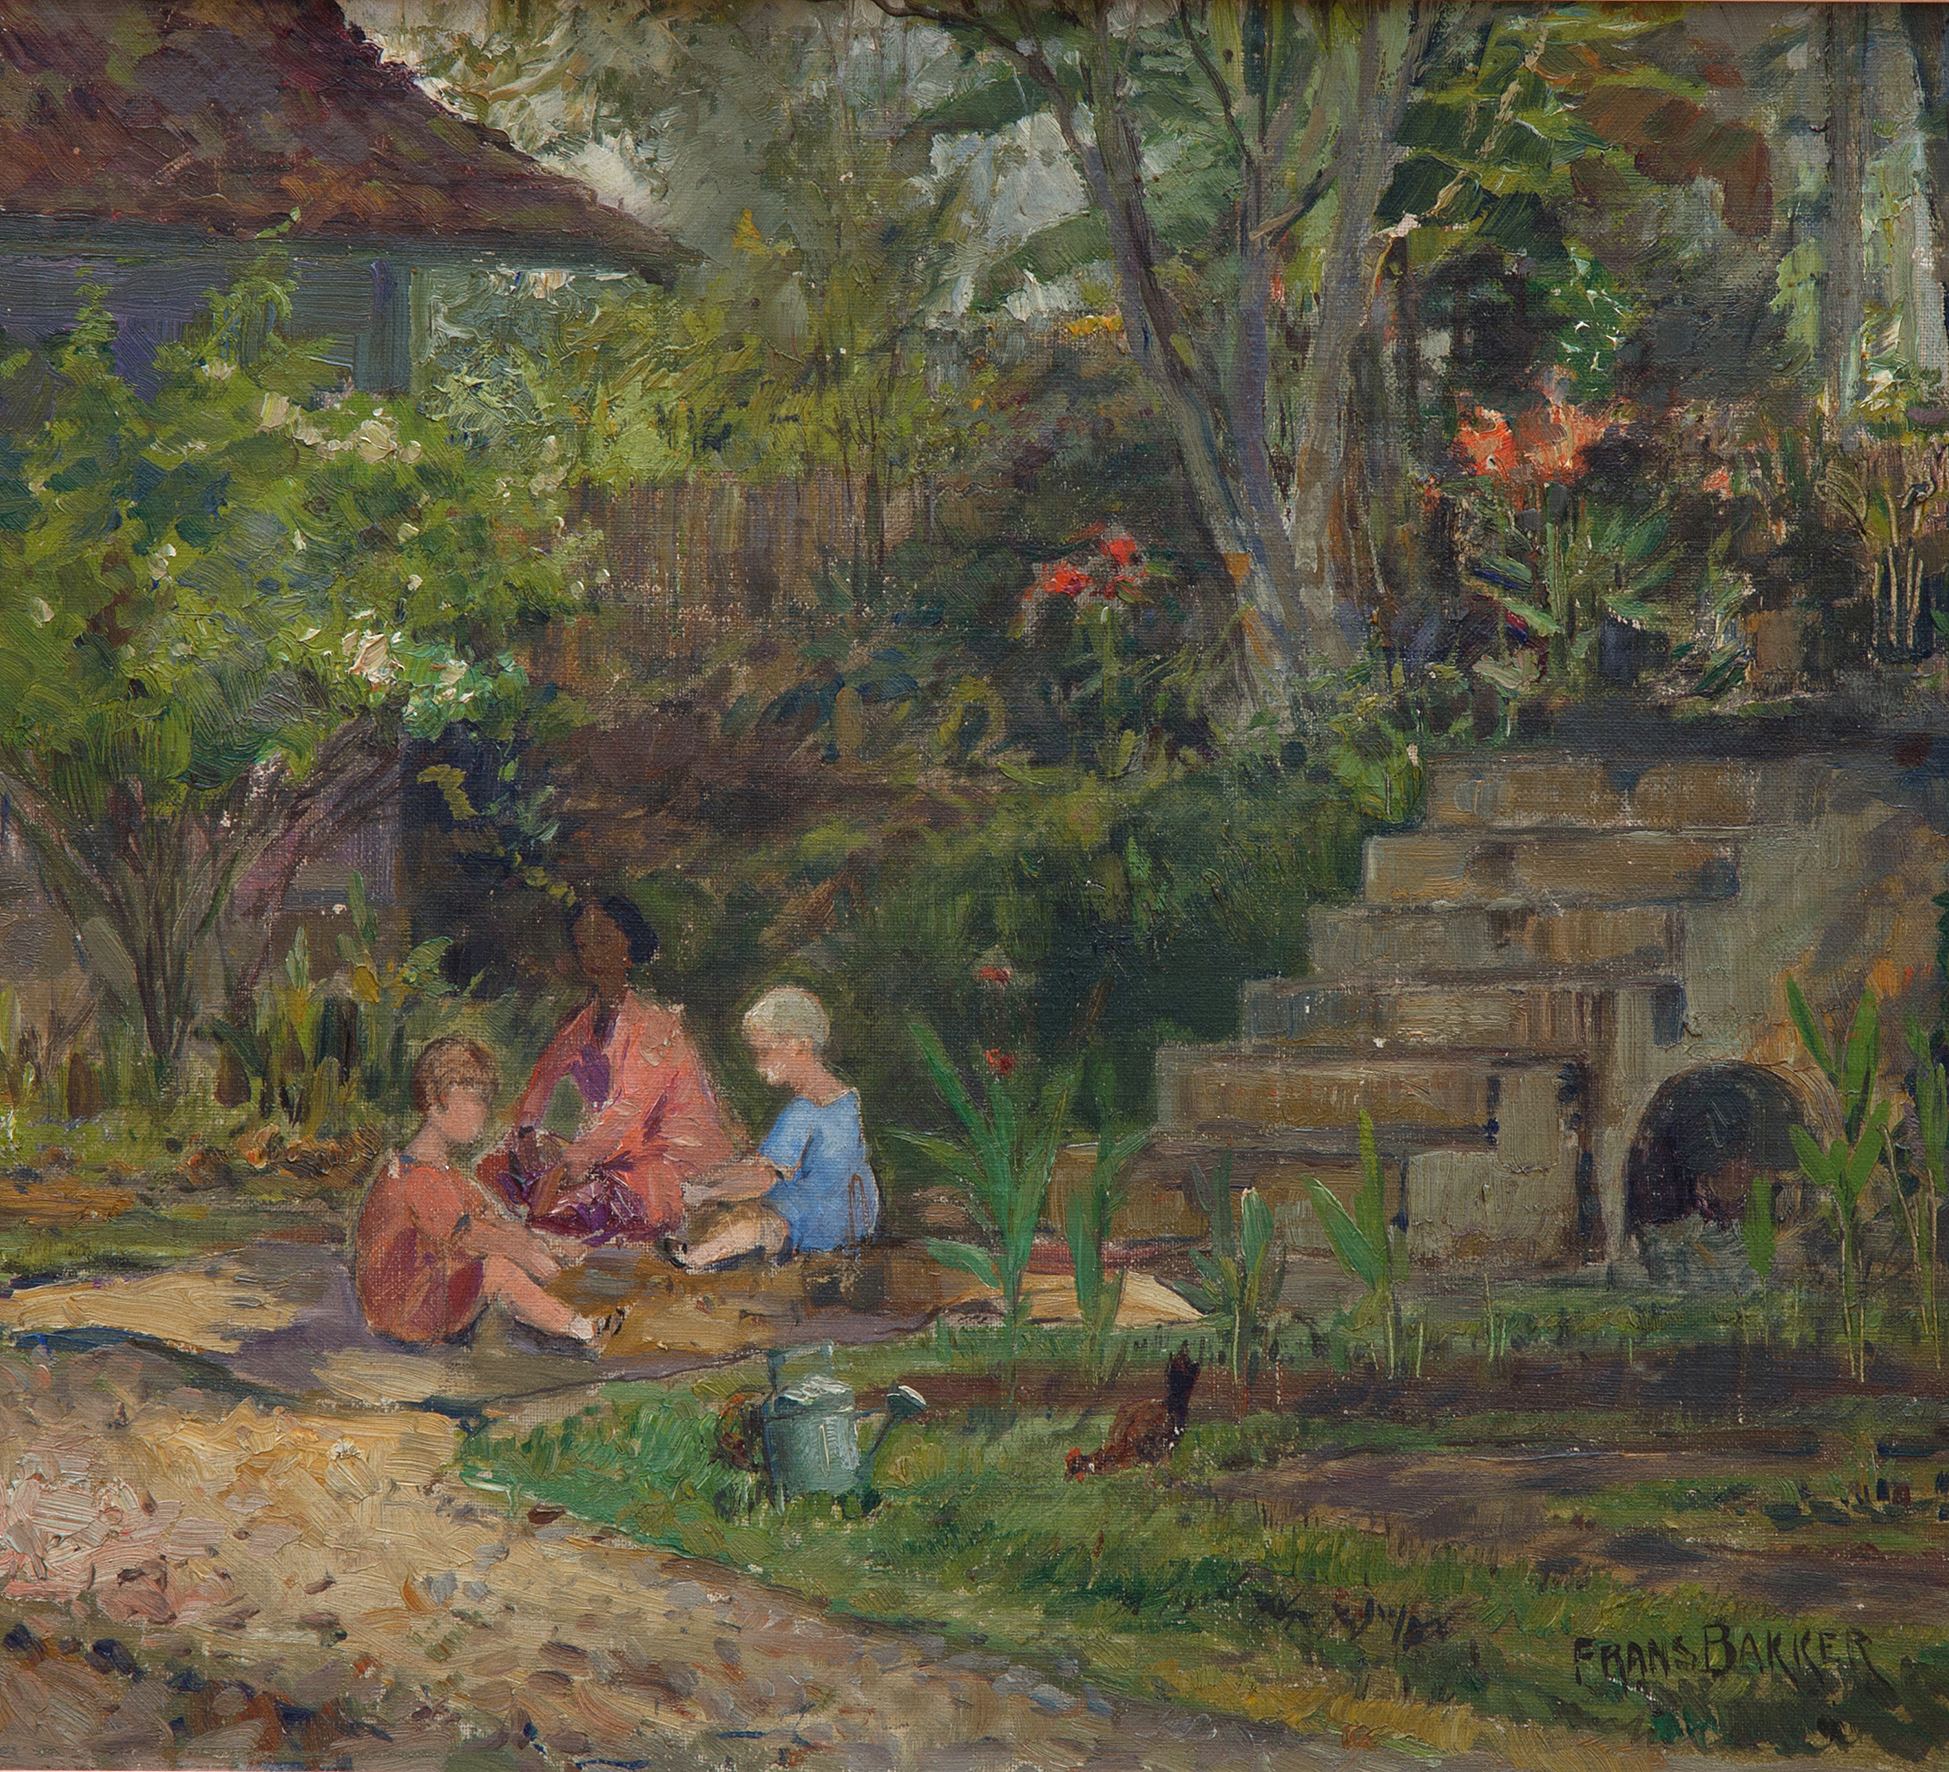 Children with their baboe in a garden